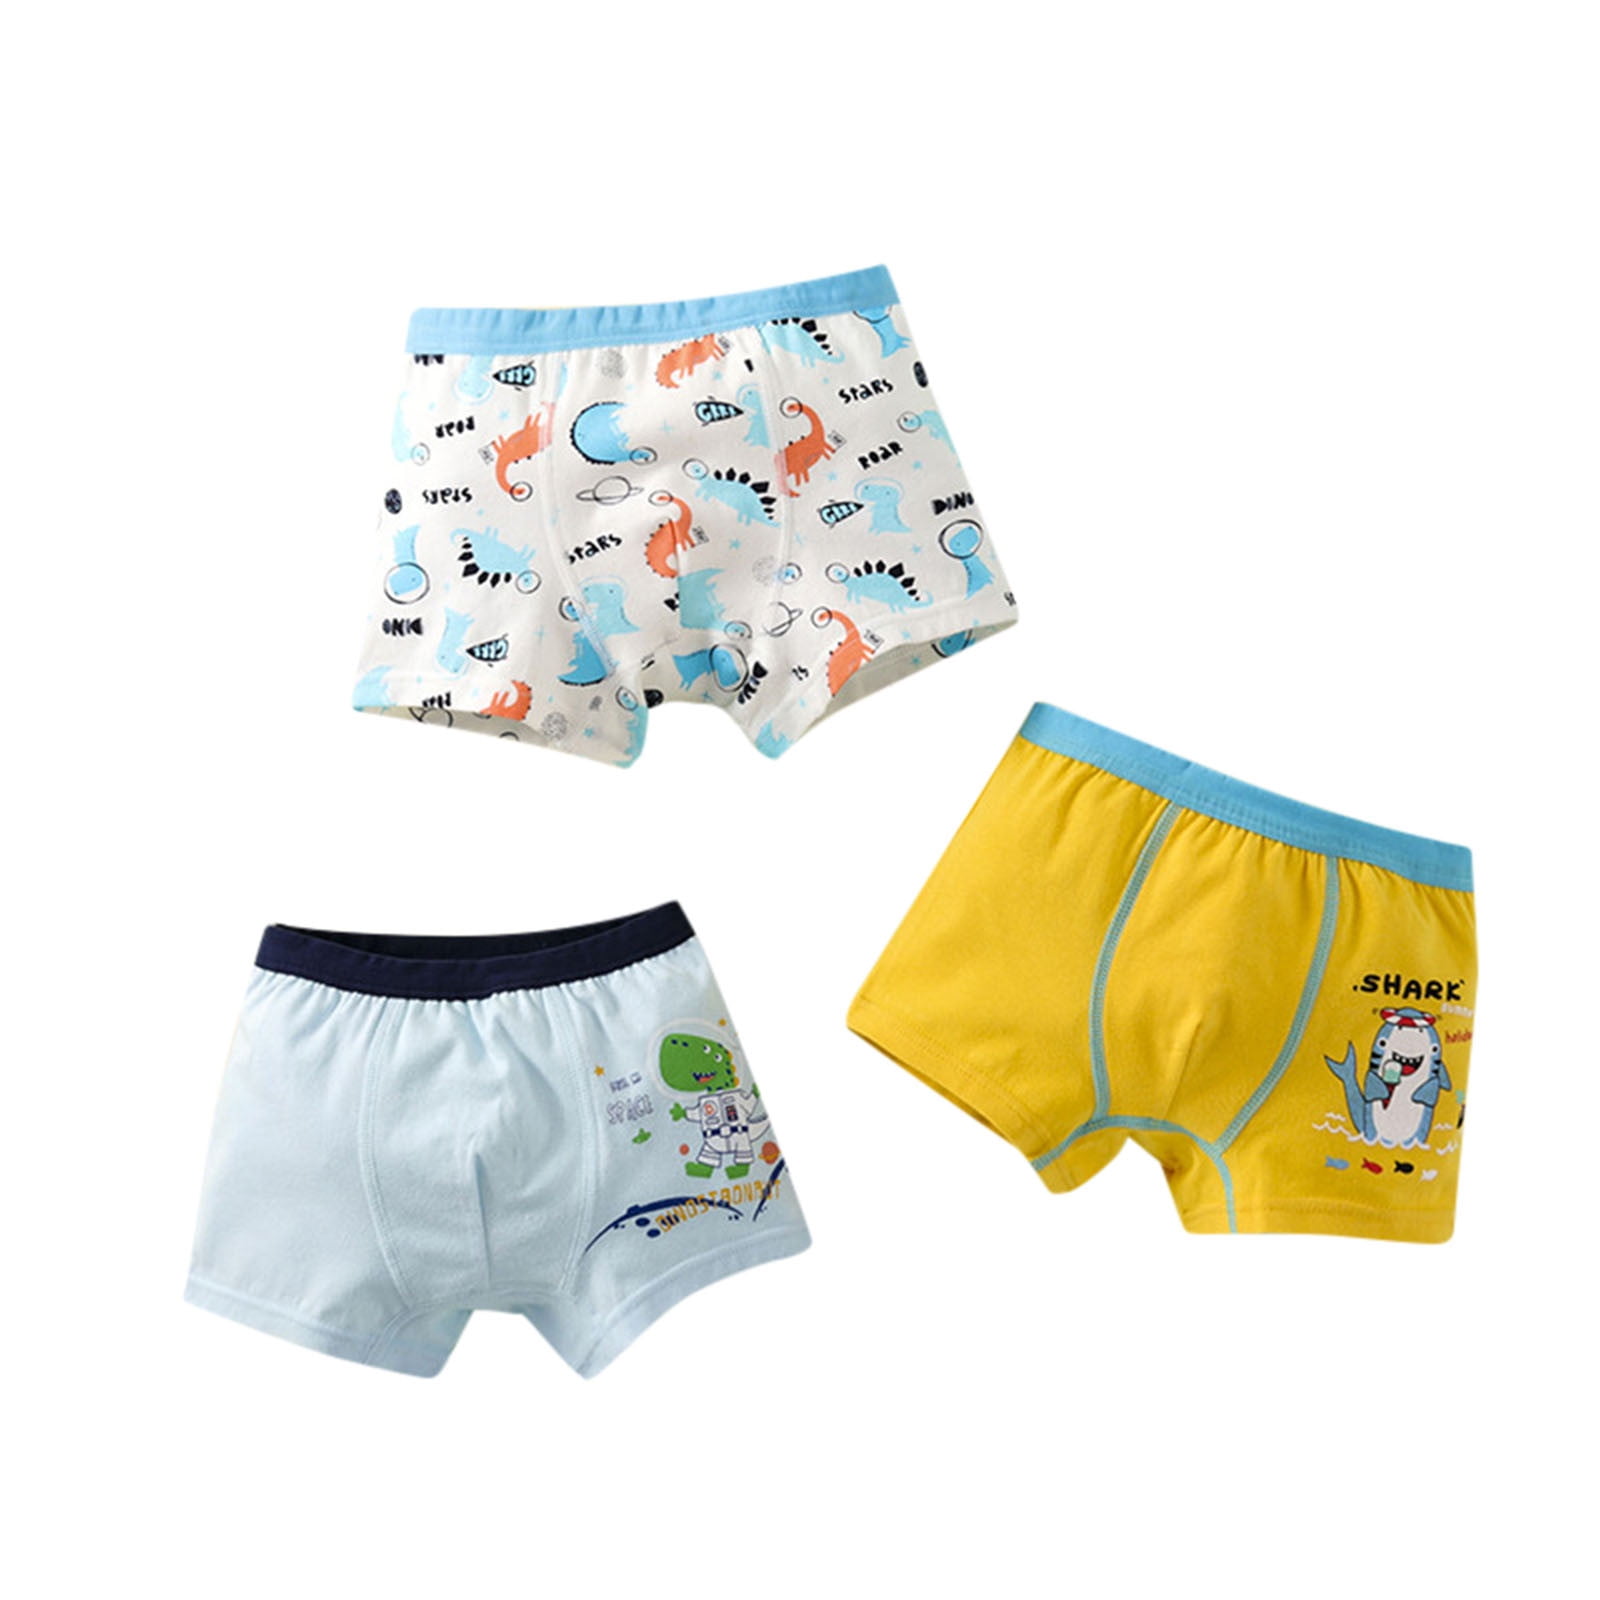 6 PK Cotton Toddler Little Boys Kids Underwear Boxer Briefs Size